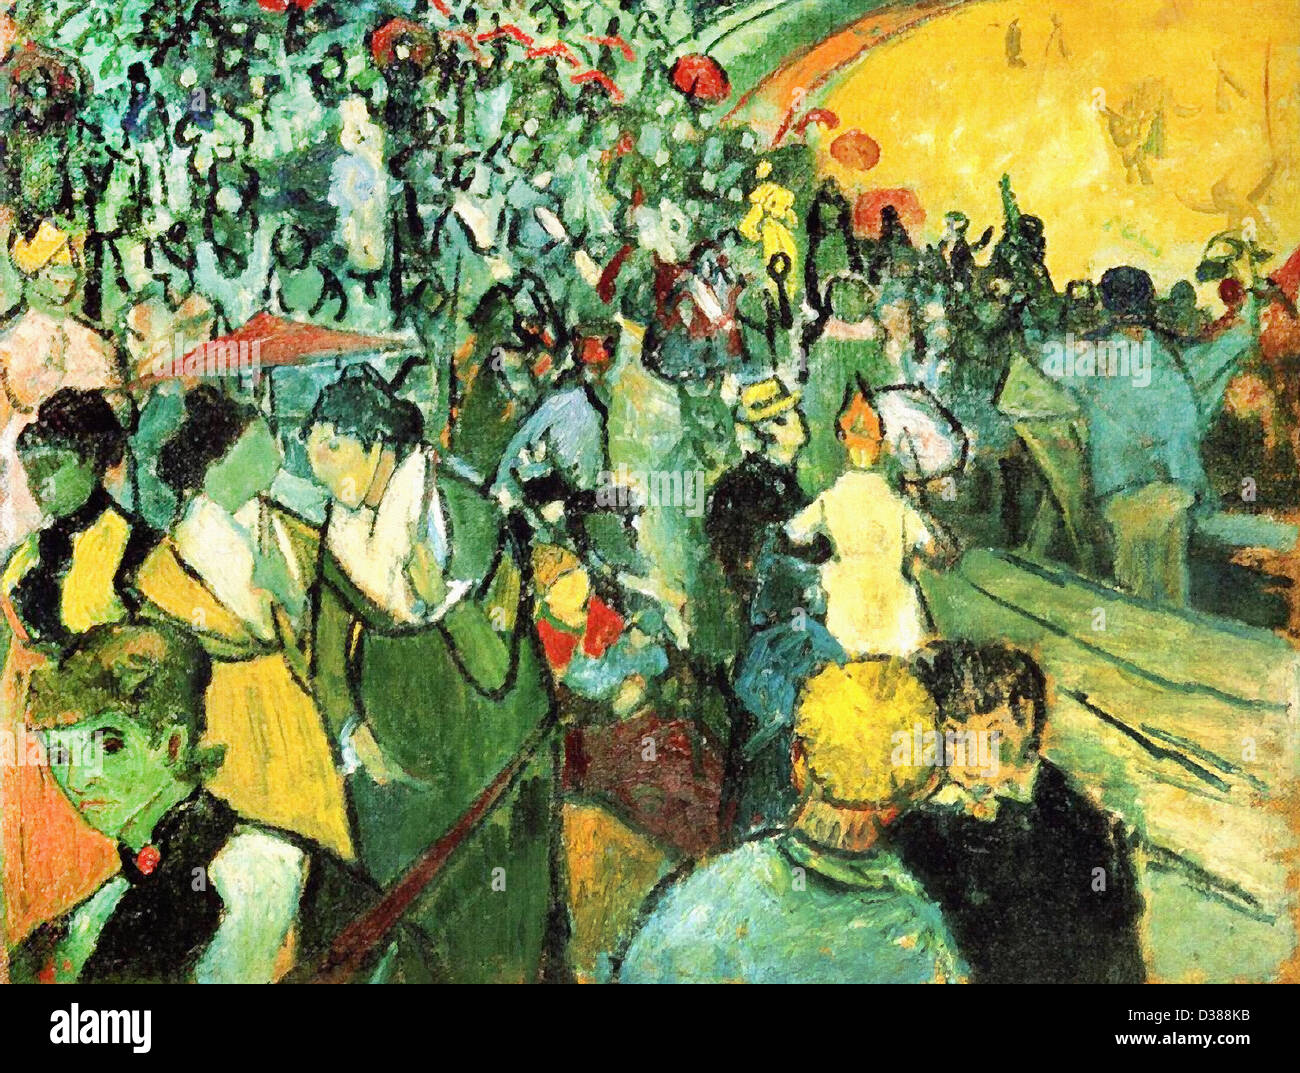 Vincent van Gogh, espectadores en la arena en Arles. 1888. Cloisonnism. Óleo sobre lienzo. Hermitage, en San Petersburgo, Rusia. Foto de stock